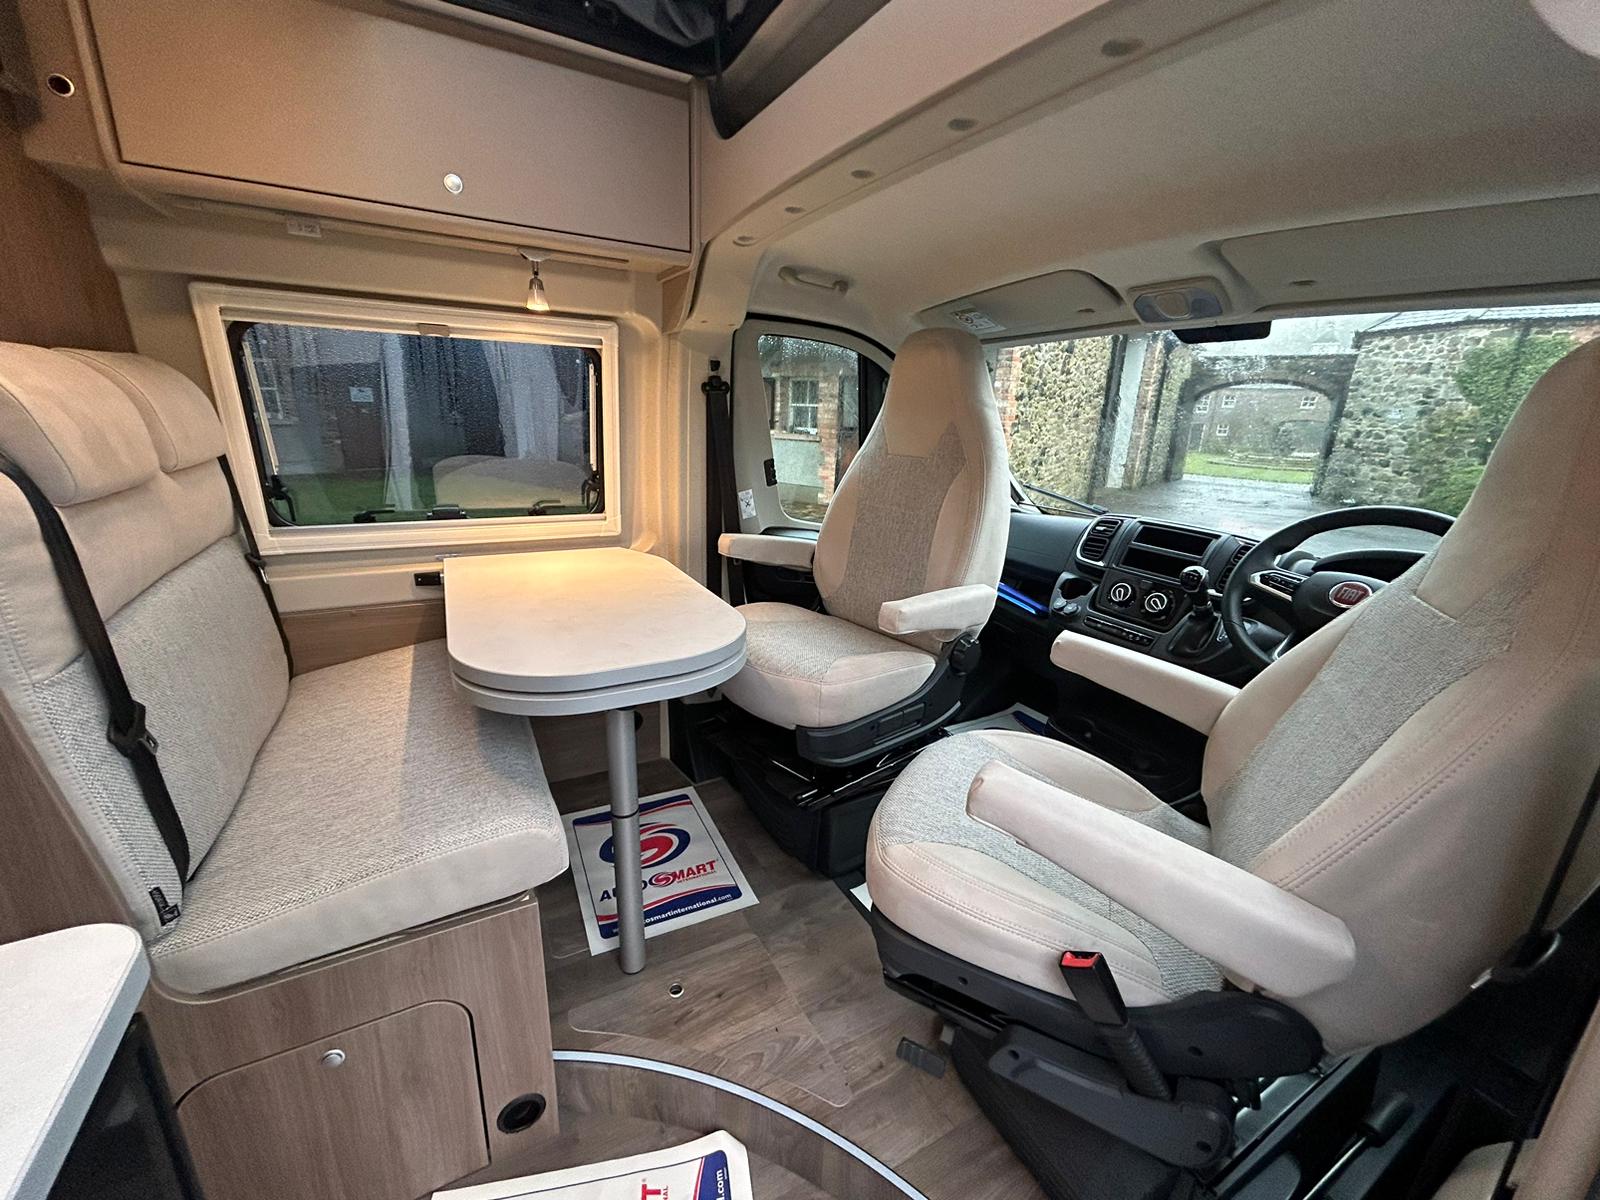 New Carado CV600 PRO Campervan - Automatic